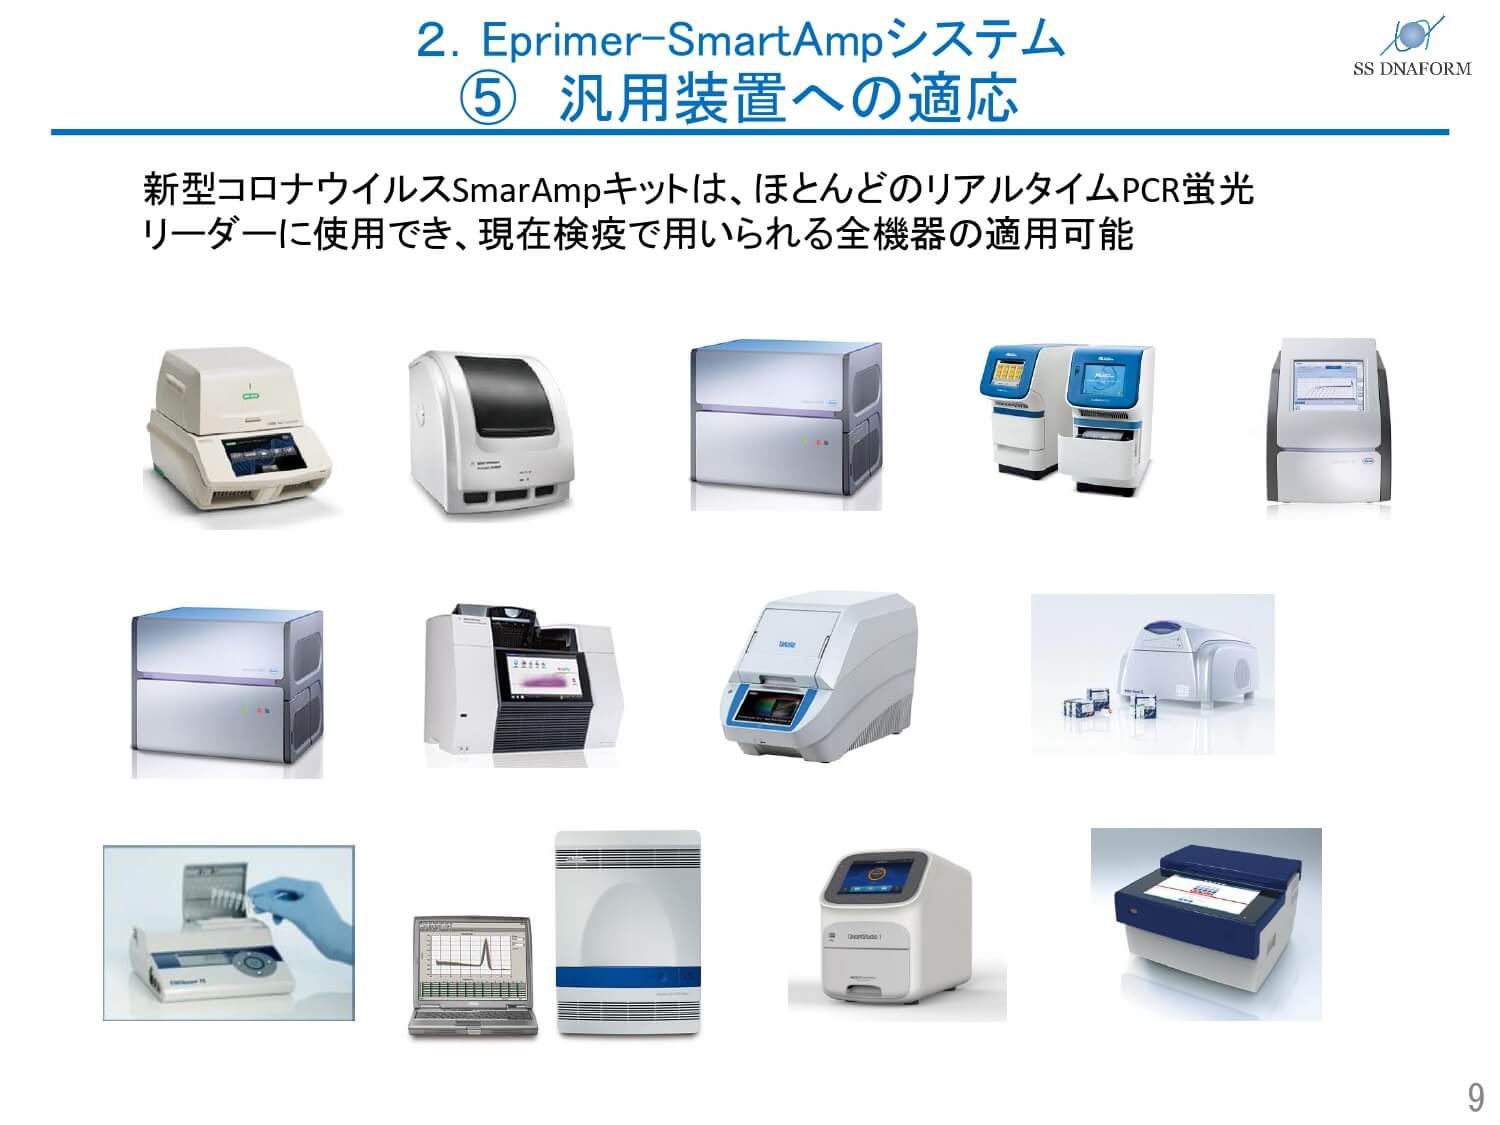 次世代PCR検査 SmartAmp法とは